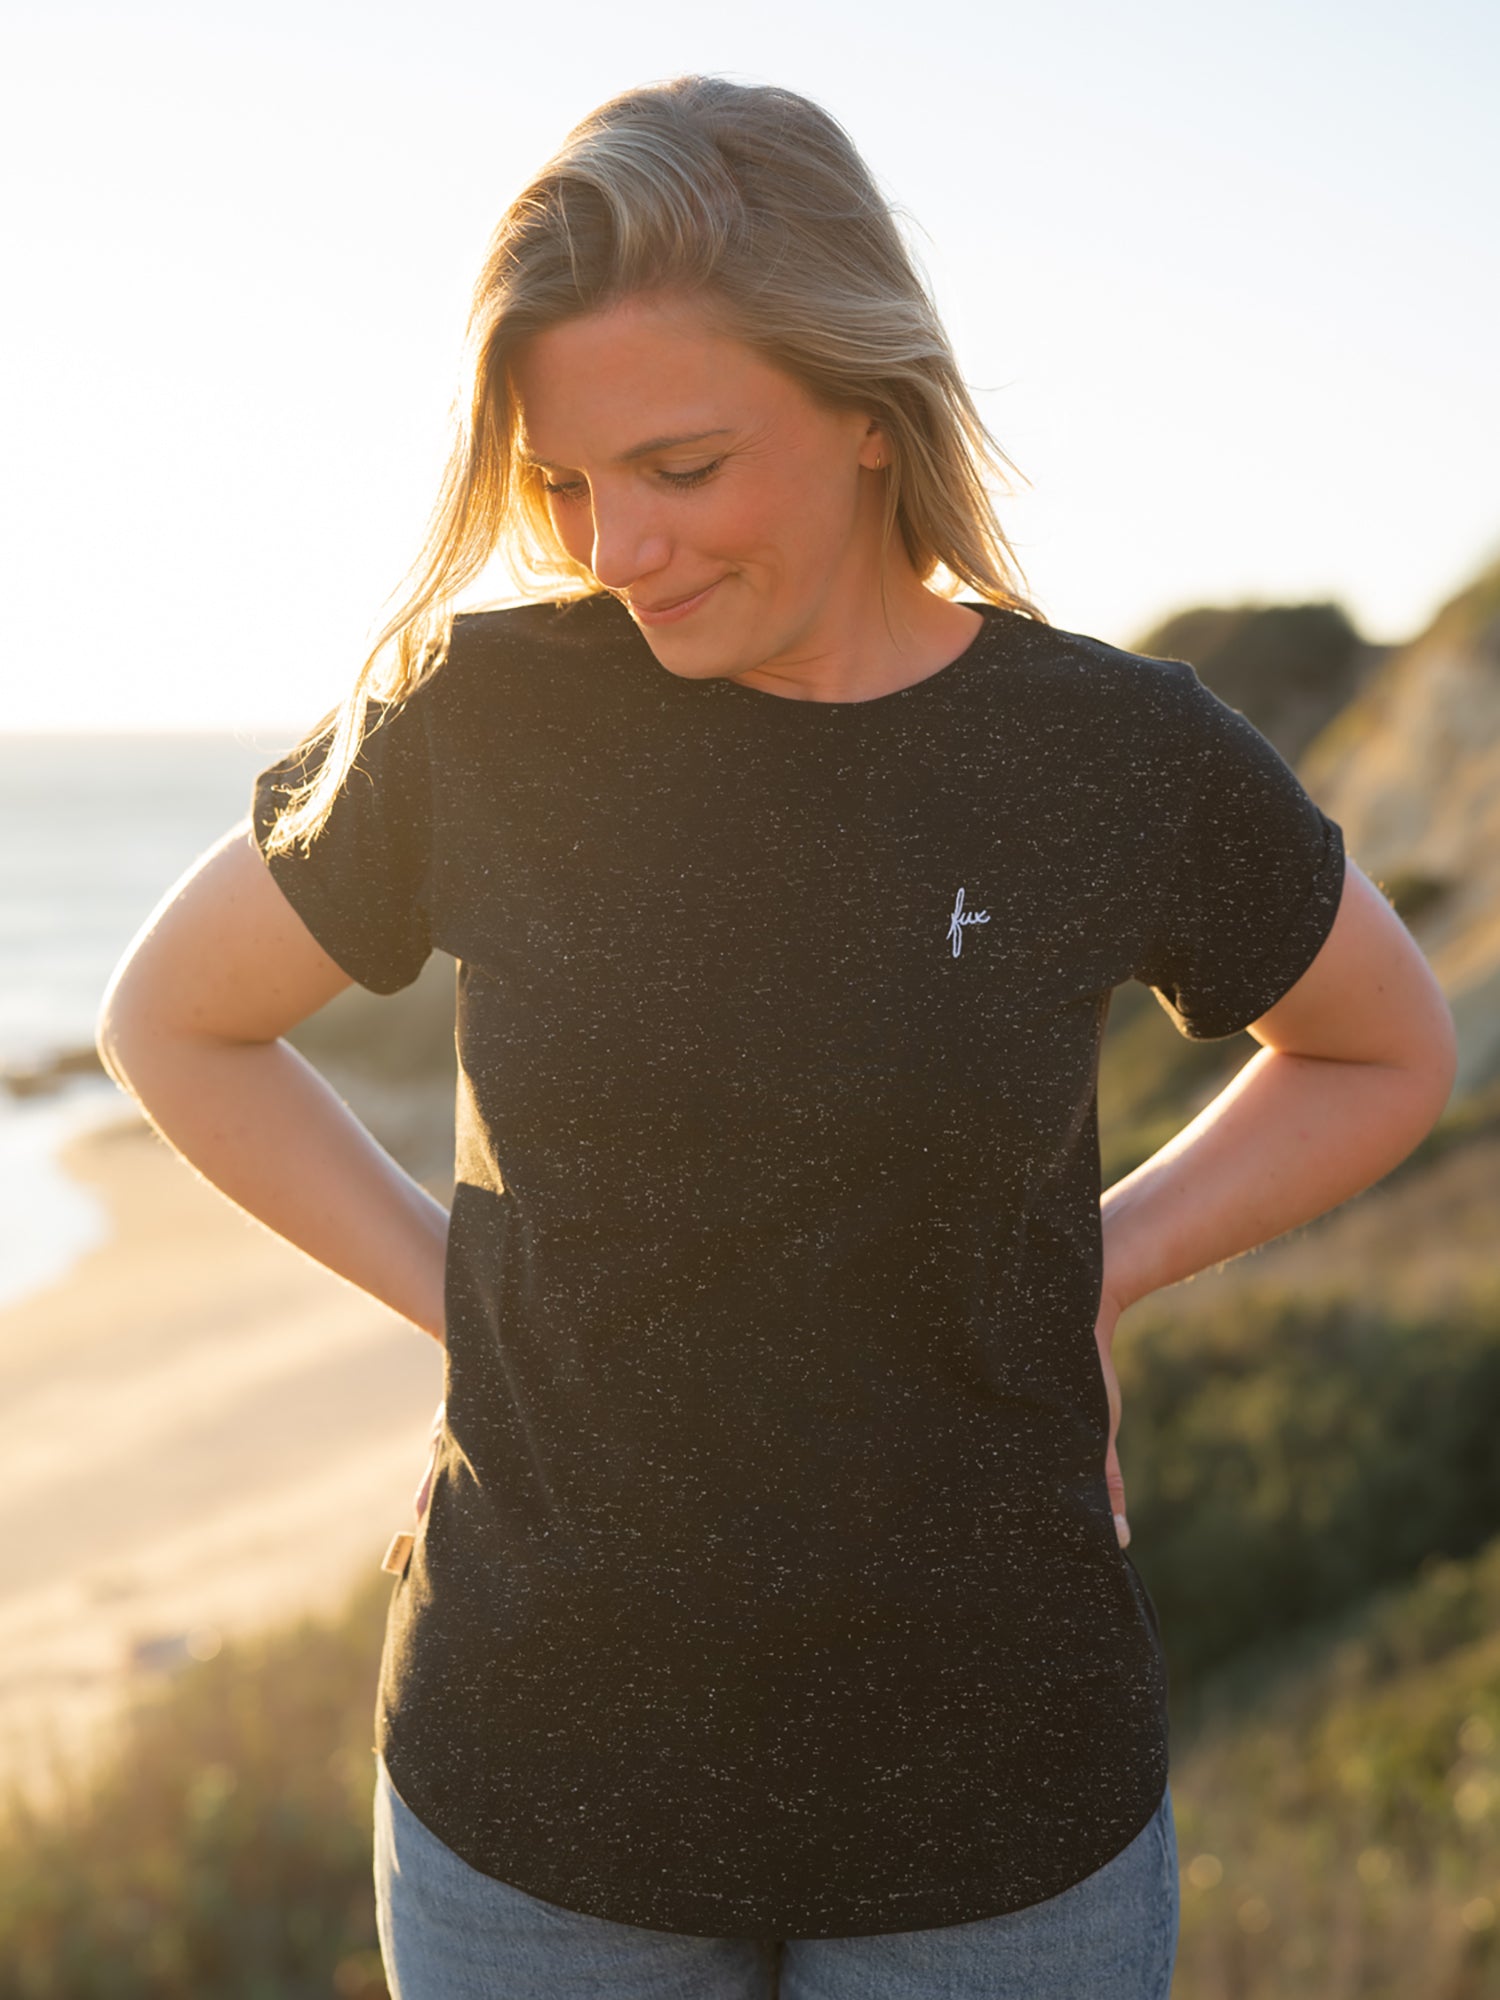 Nachhaltiges Fair Fashion Frauen T-Shirt von FUXBAU in schwarz aus Biobaumwolle und weissen neps Punkten.